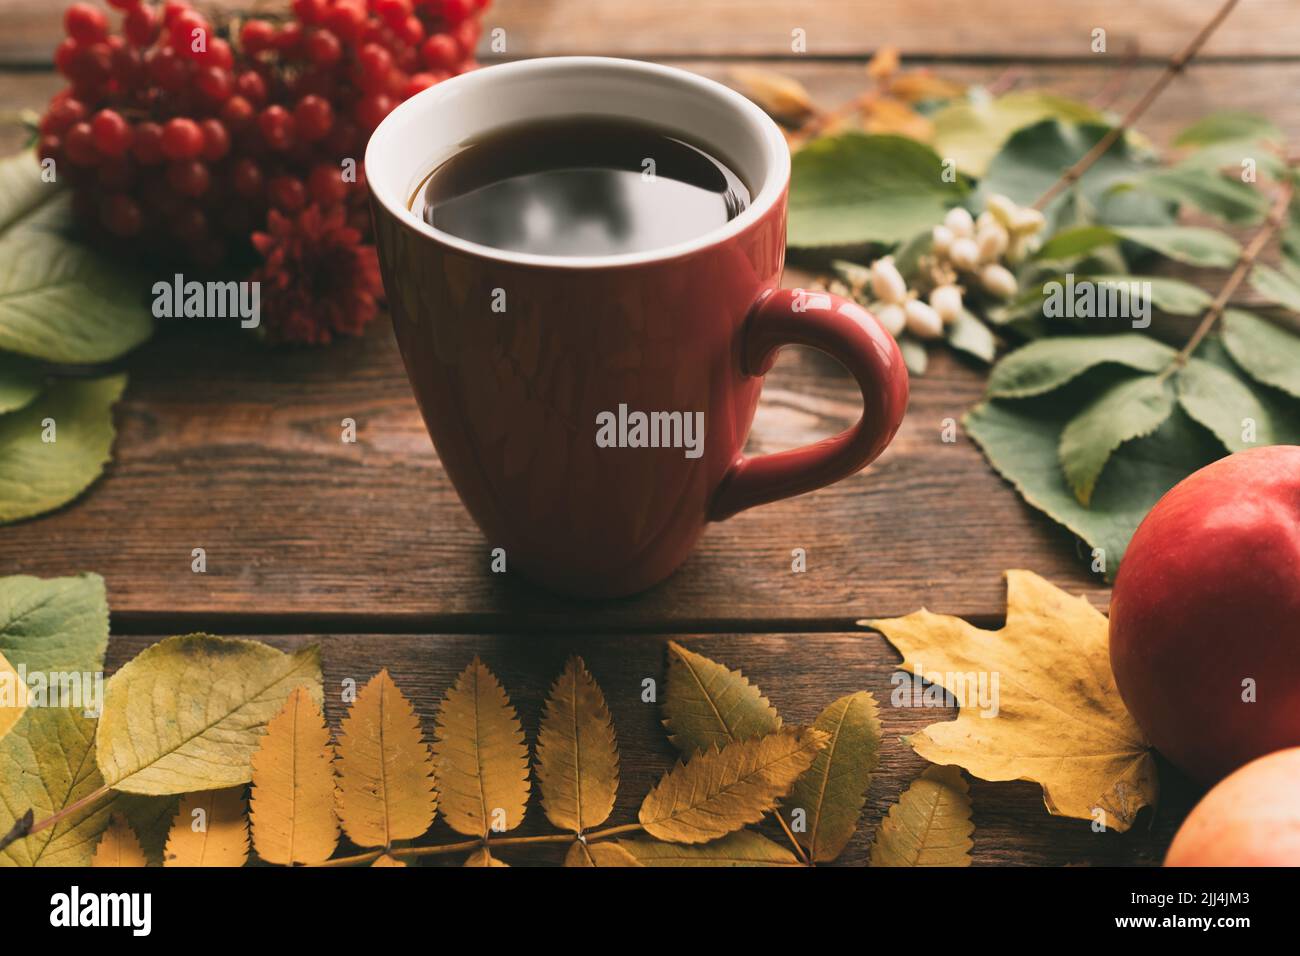 Chauffage de café ou de thé récolte automne bois concept Banque D'Images